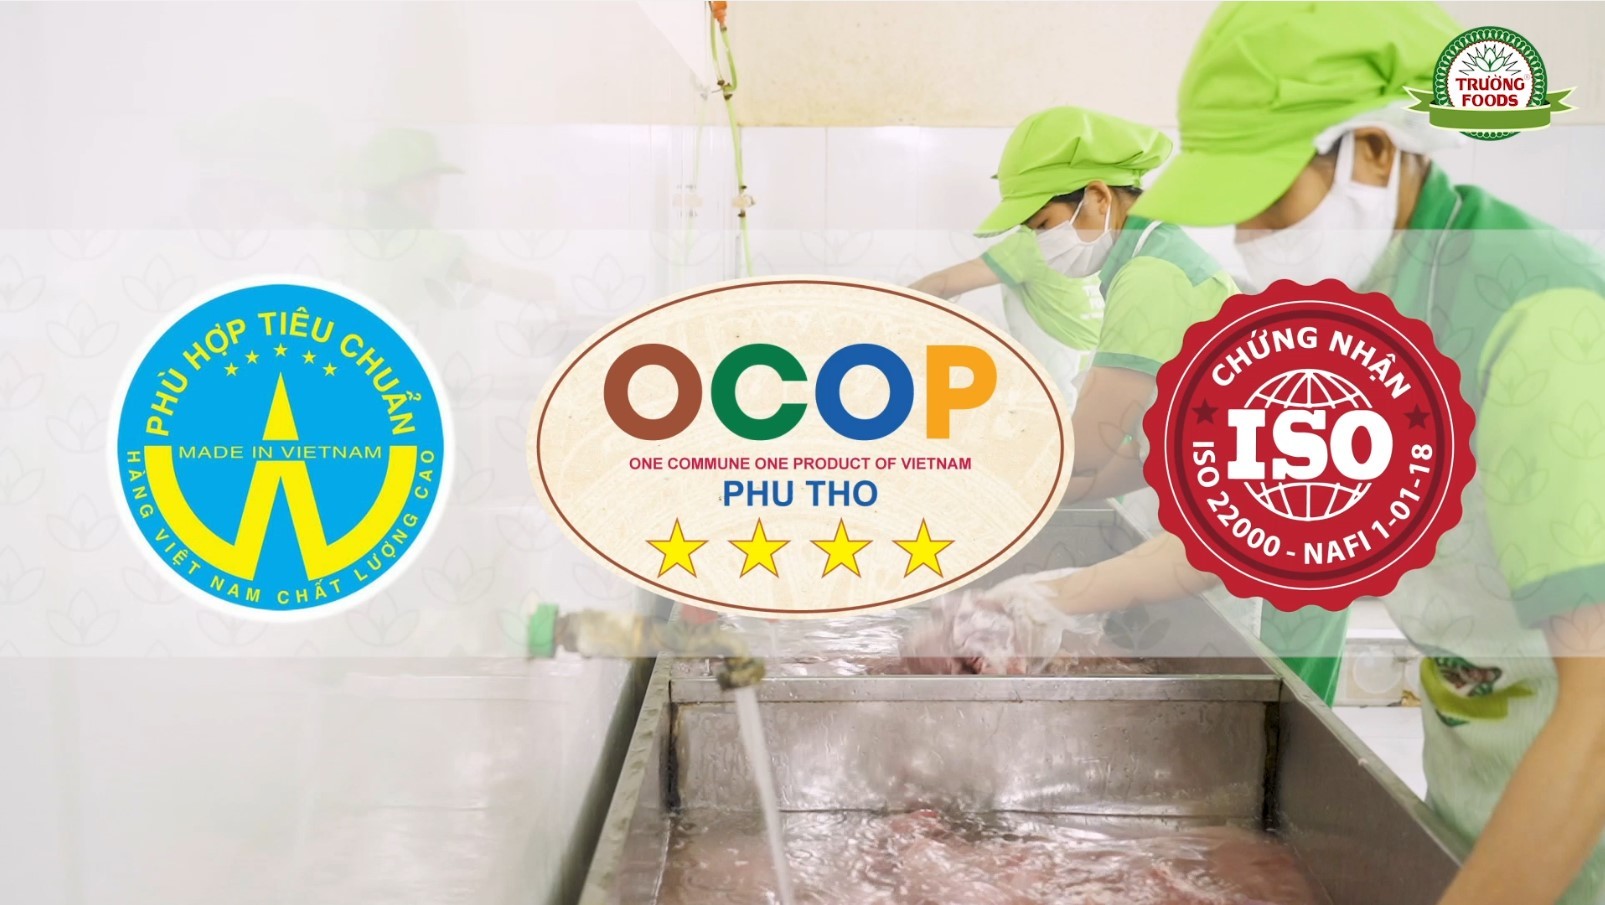 Trường Foods – Xứng tầm thương hiệu sản phẩm OCCOP.